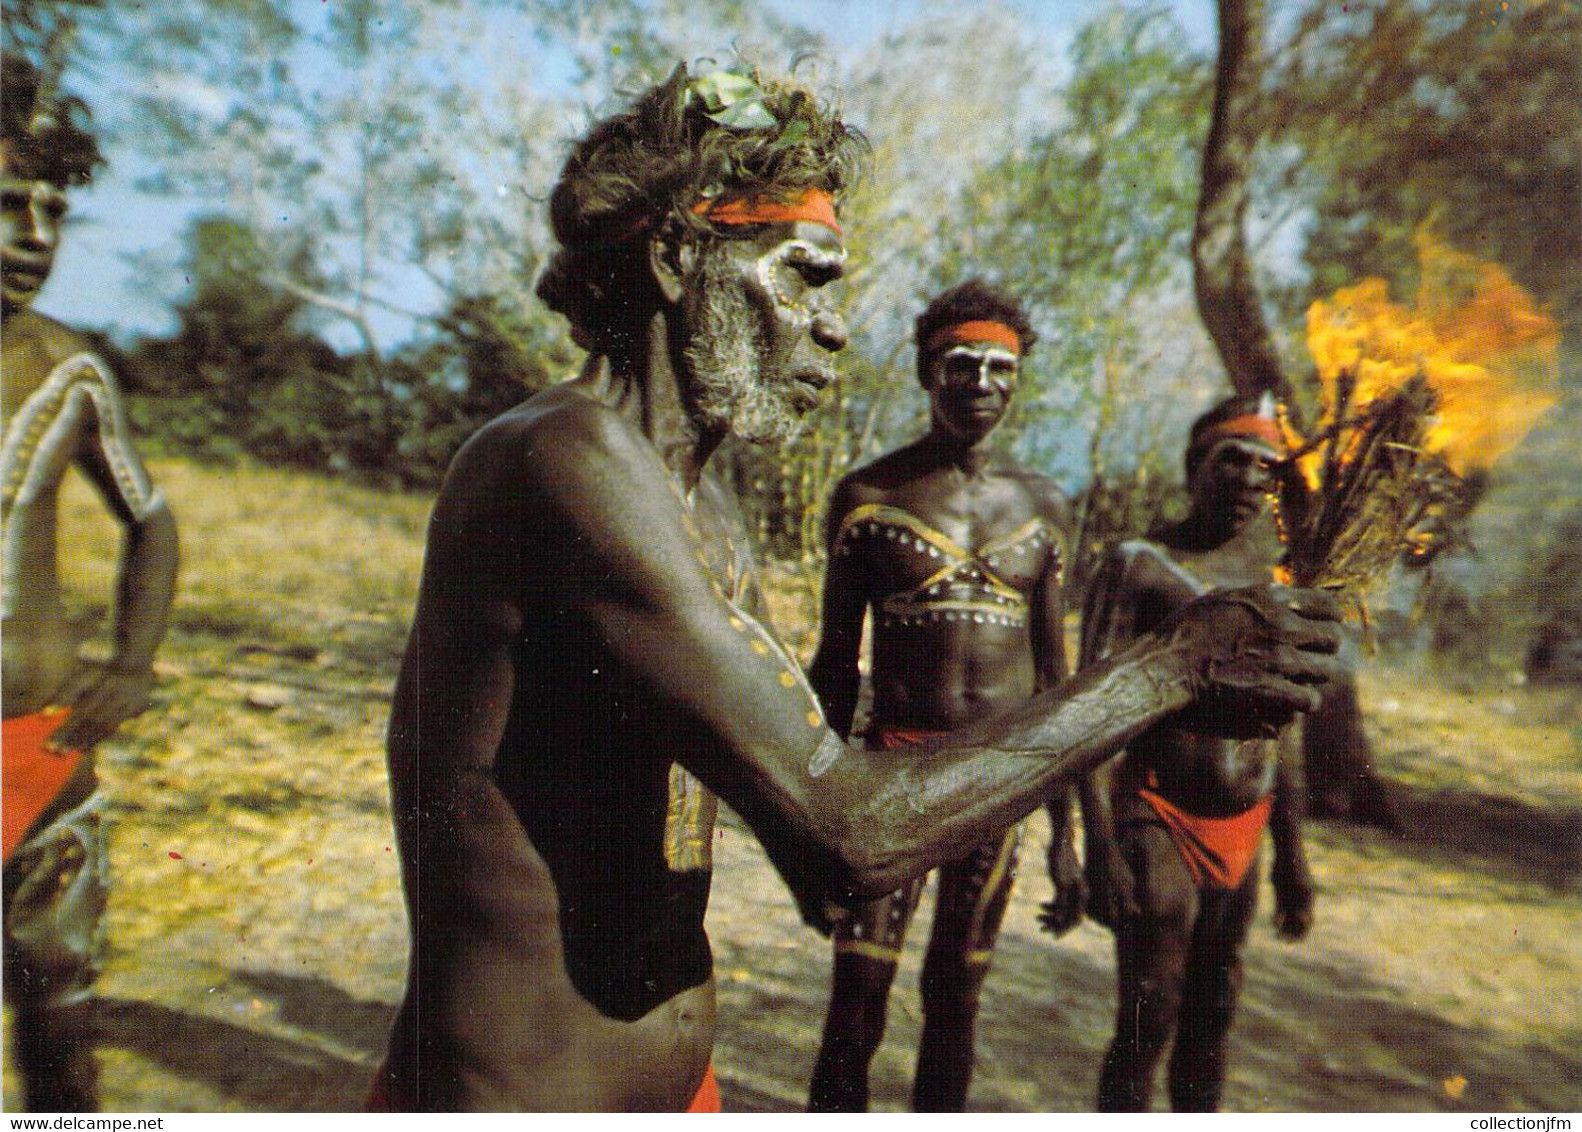 CPSM AUSTRALIE "Aborigènes" - Aborigines